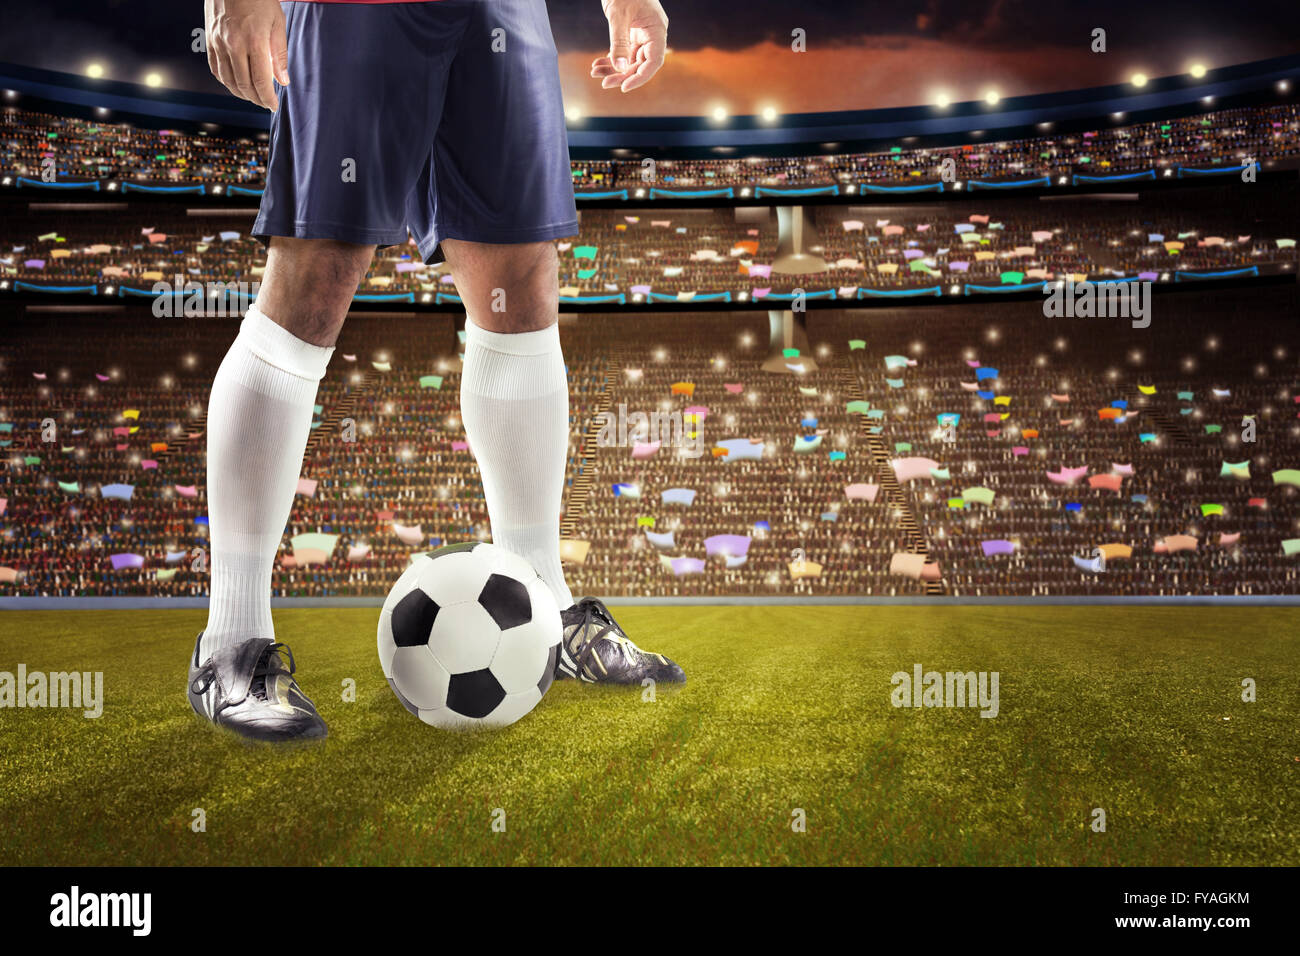 Immagine simbolica di un calcio o di giocatore di calcio sul campo Foto Stock